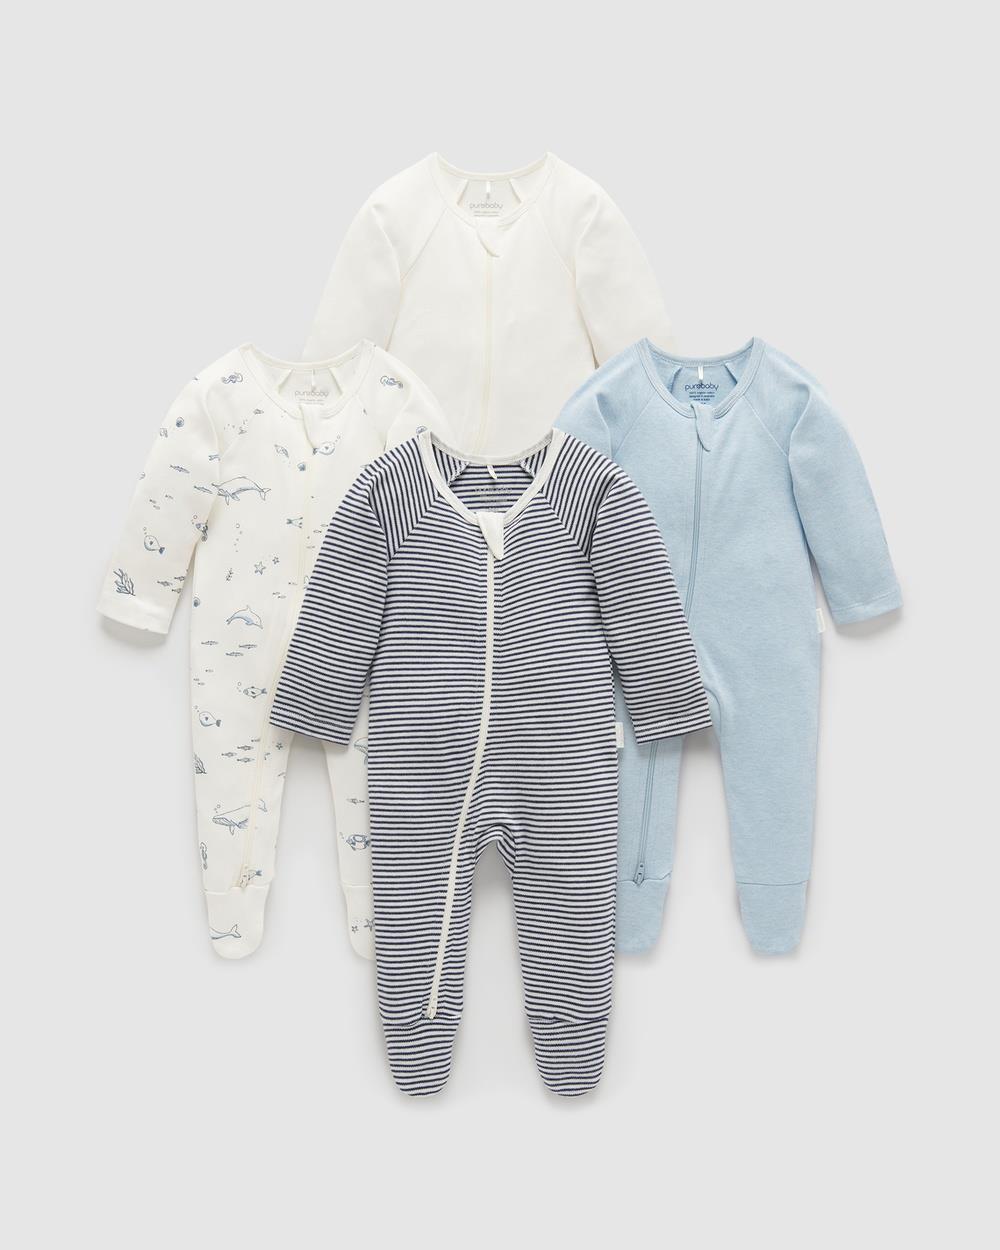 Purebaby - 4 Pack Zip Growsuit Babies - All onesies (BQ_Vanilla Nautical Pack) 4 Pack Zip Growsuit-Babies